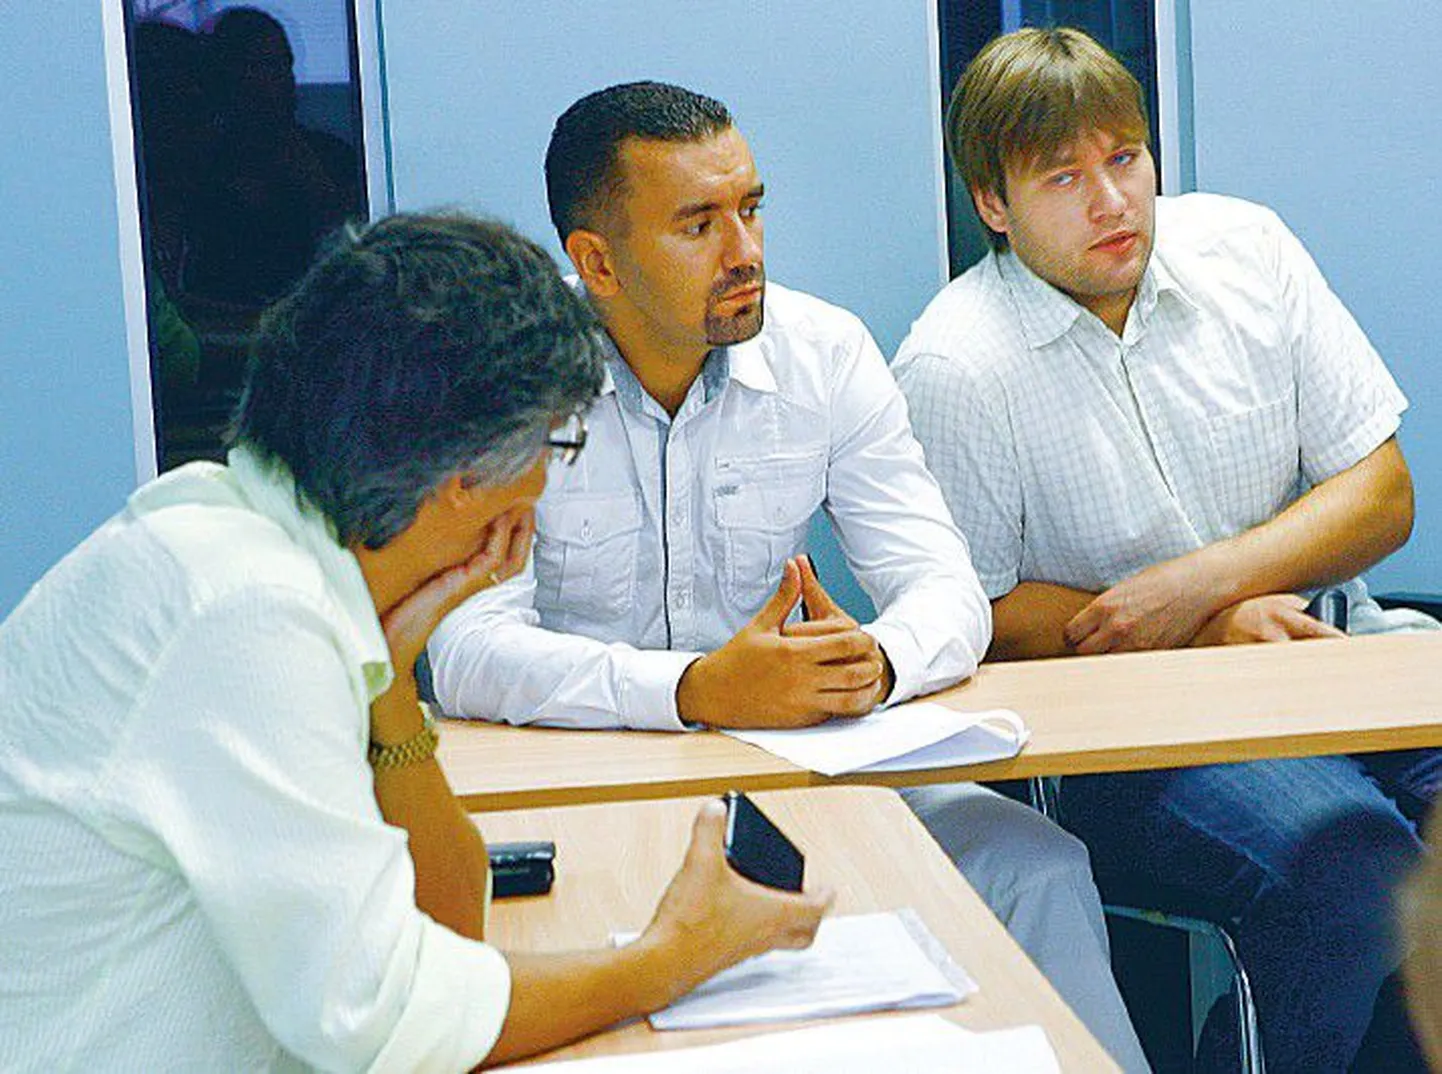 В четверг перед комиссией по трудовым спорам предстали руководитель OÜ PartCom Марек Мяги (слева), а также Яанус Рейндам и Рагнар Рюйтель, требующие от фирмы выплаты зарплаты и компенсаций.